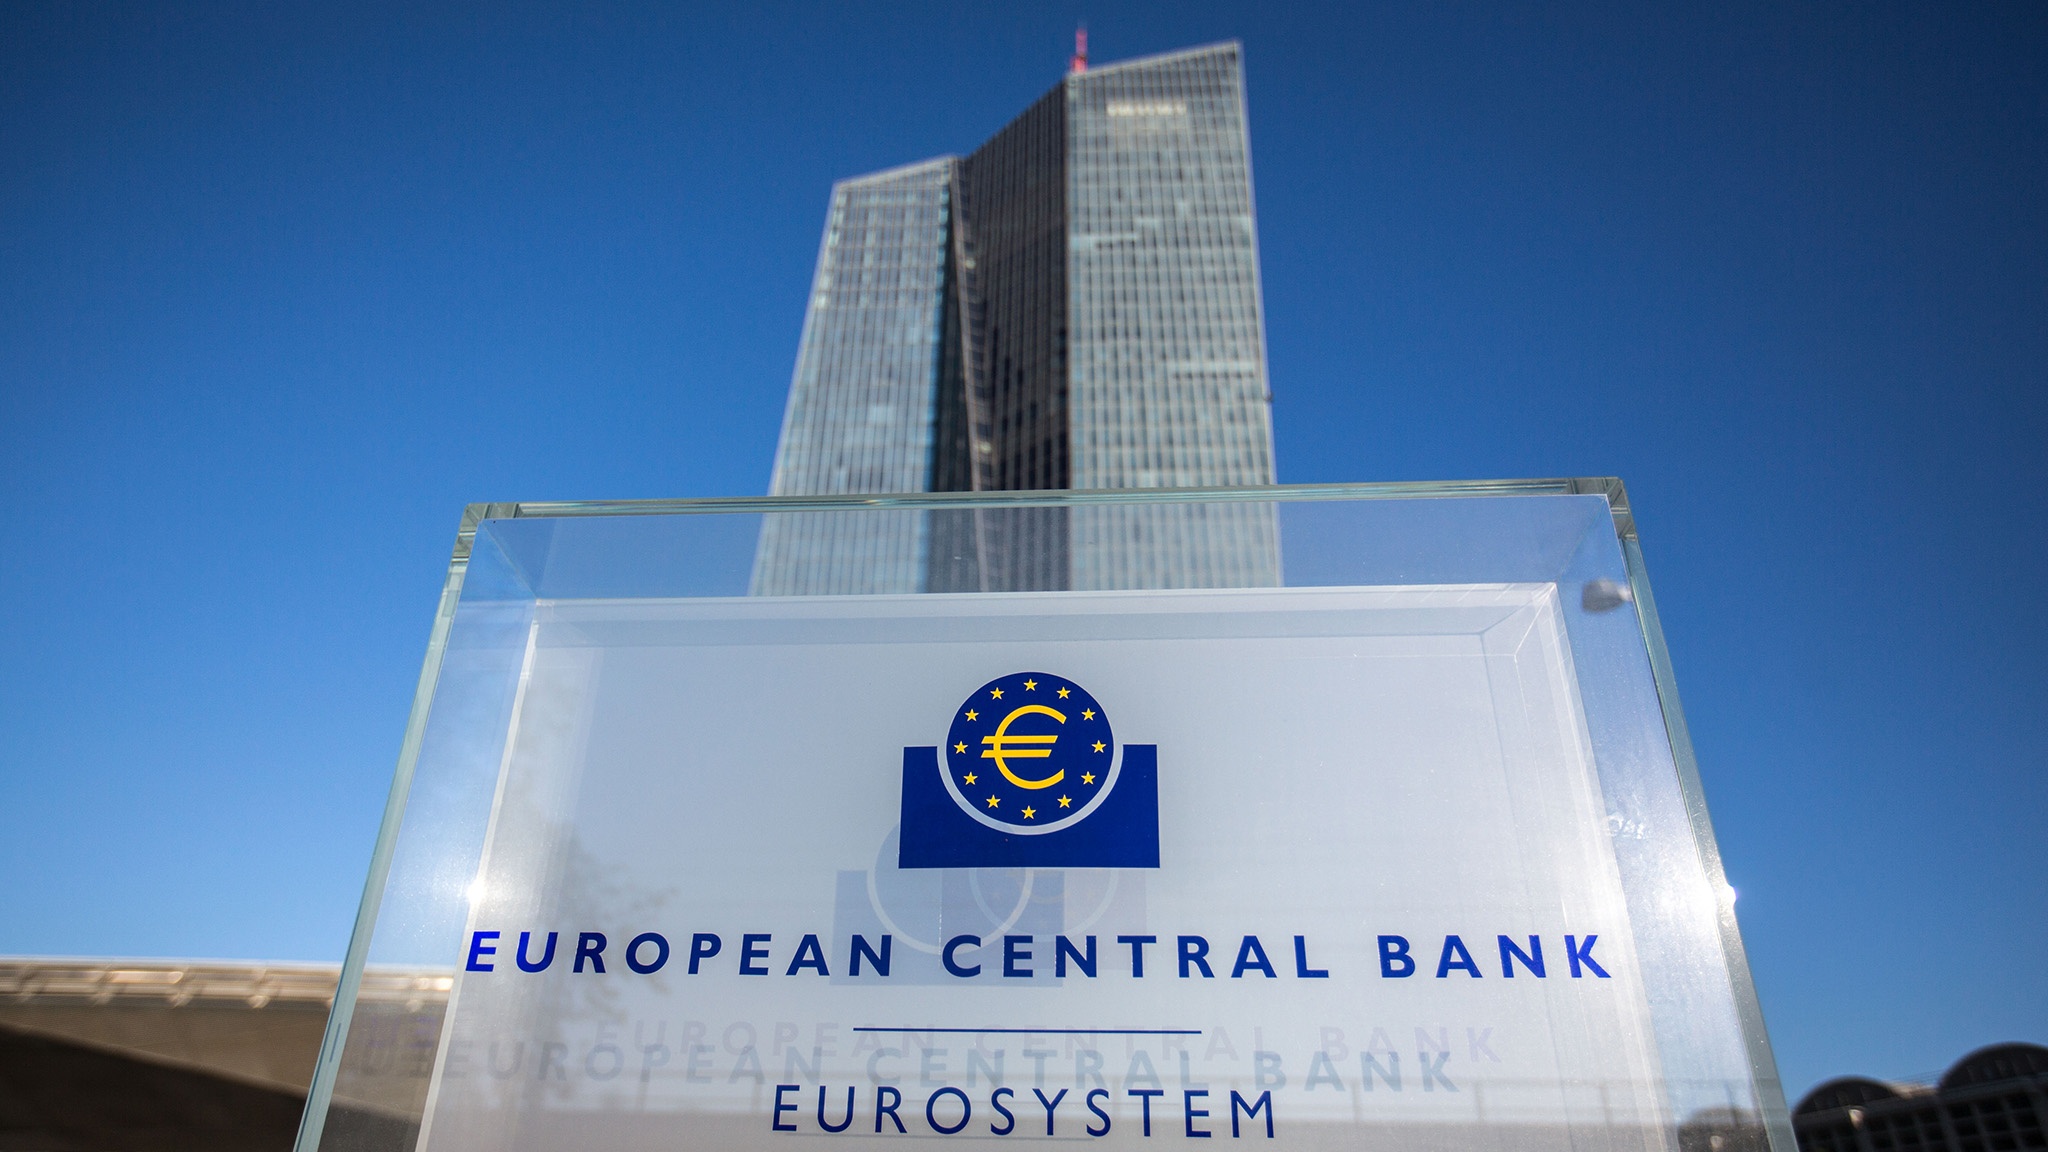 Liệu còn gì khác đằng sau những lời đồn thổi thắt chặt chính sách ở ECB?